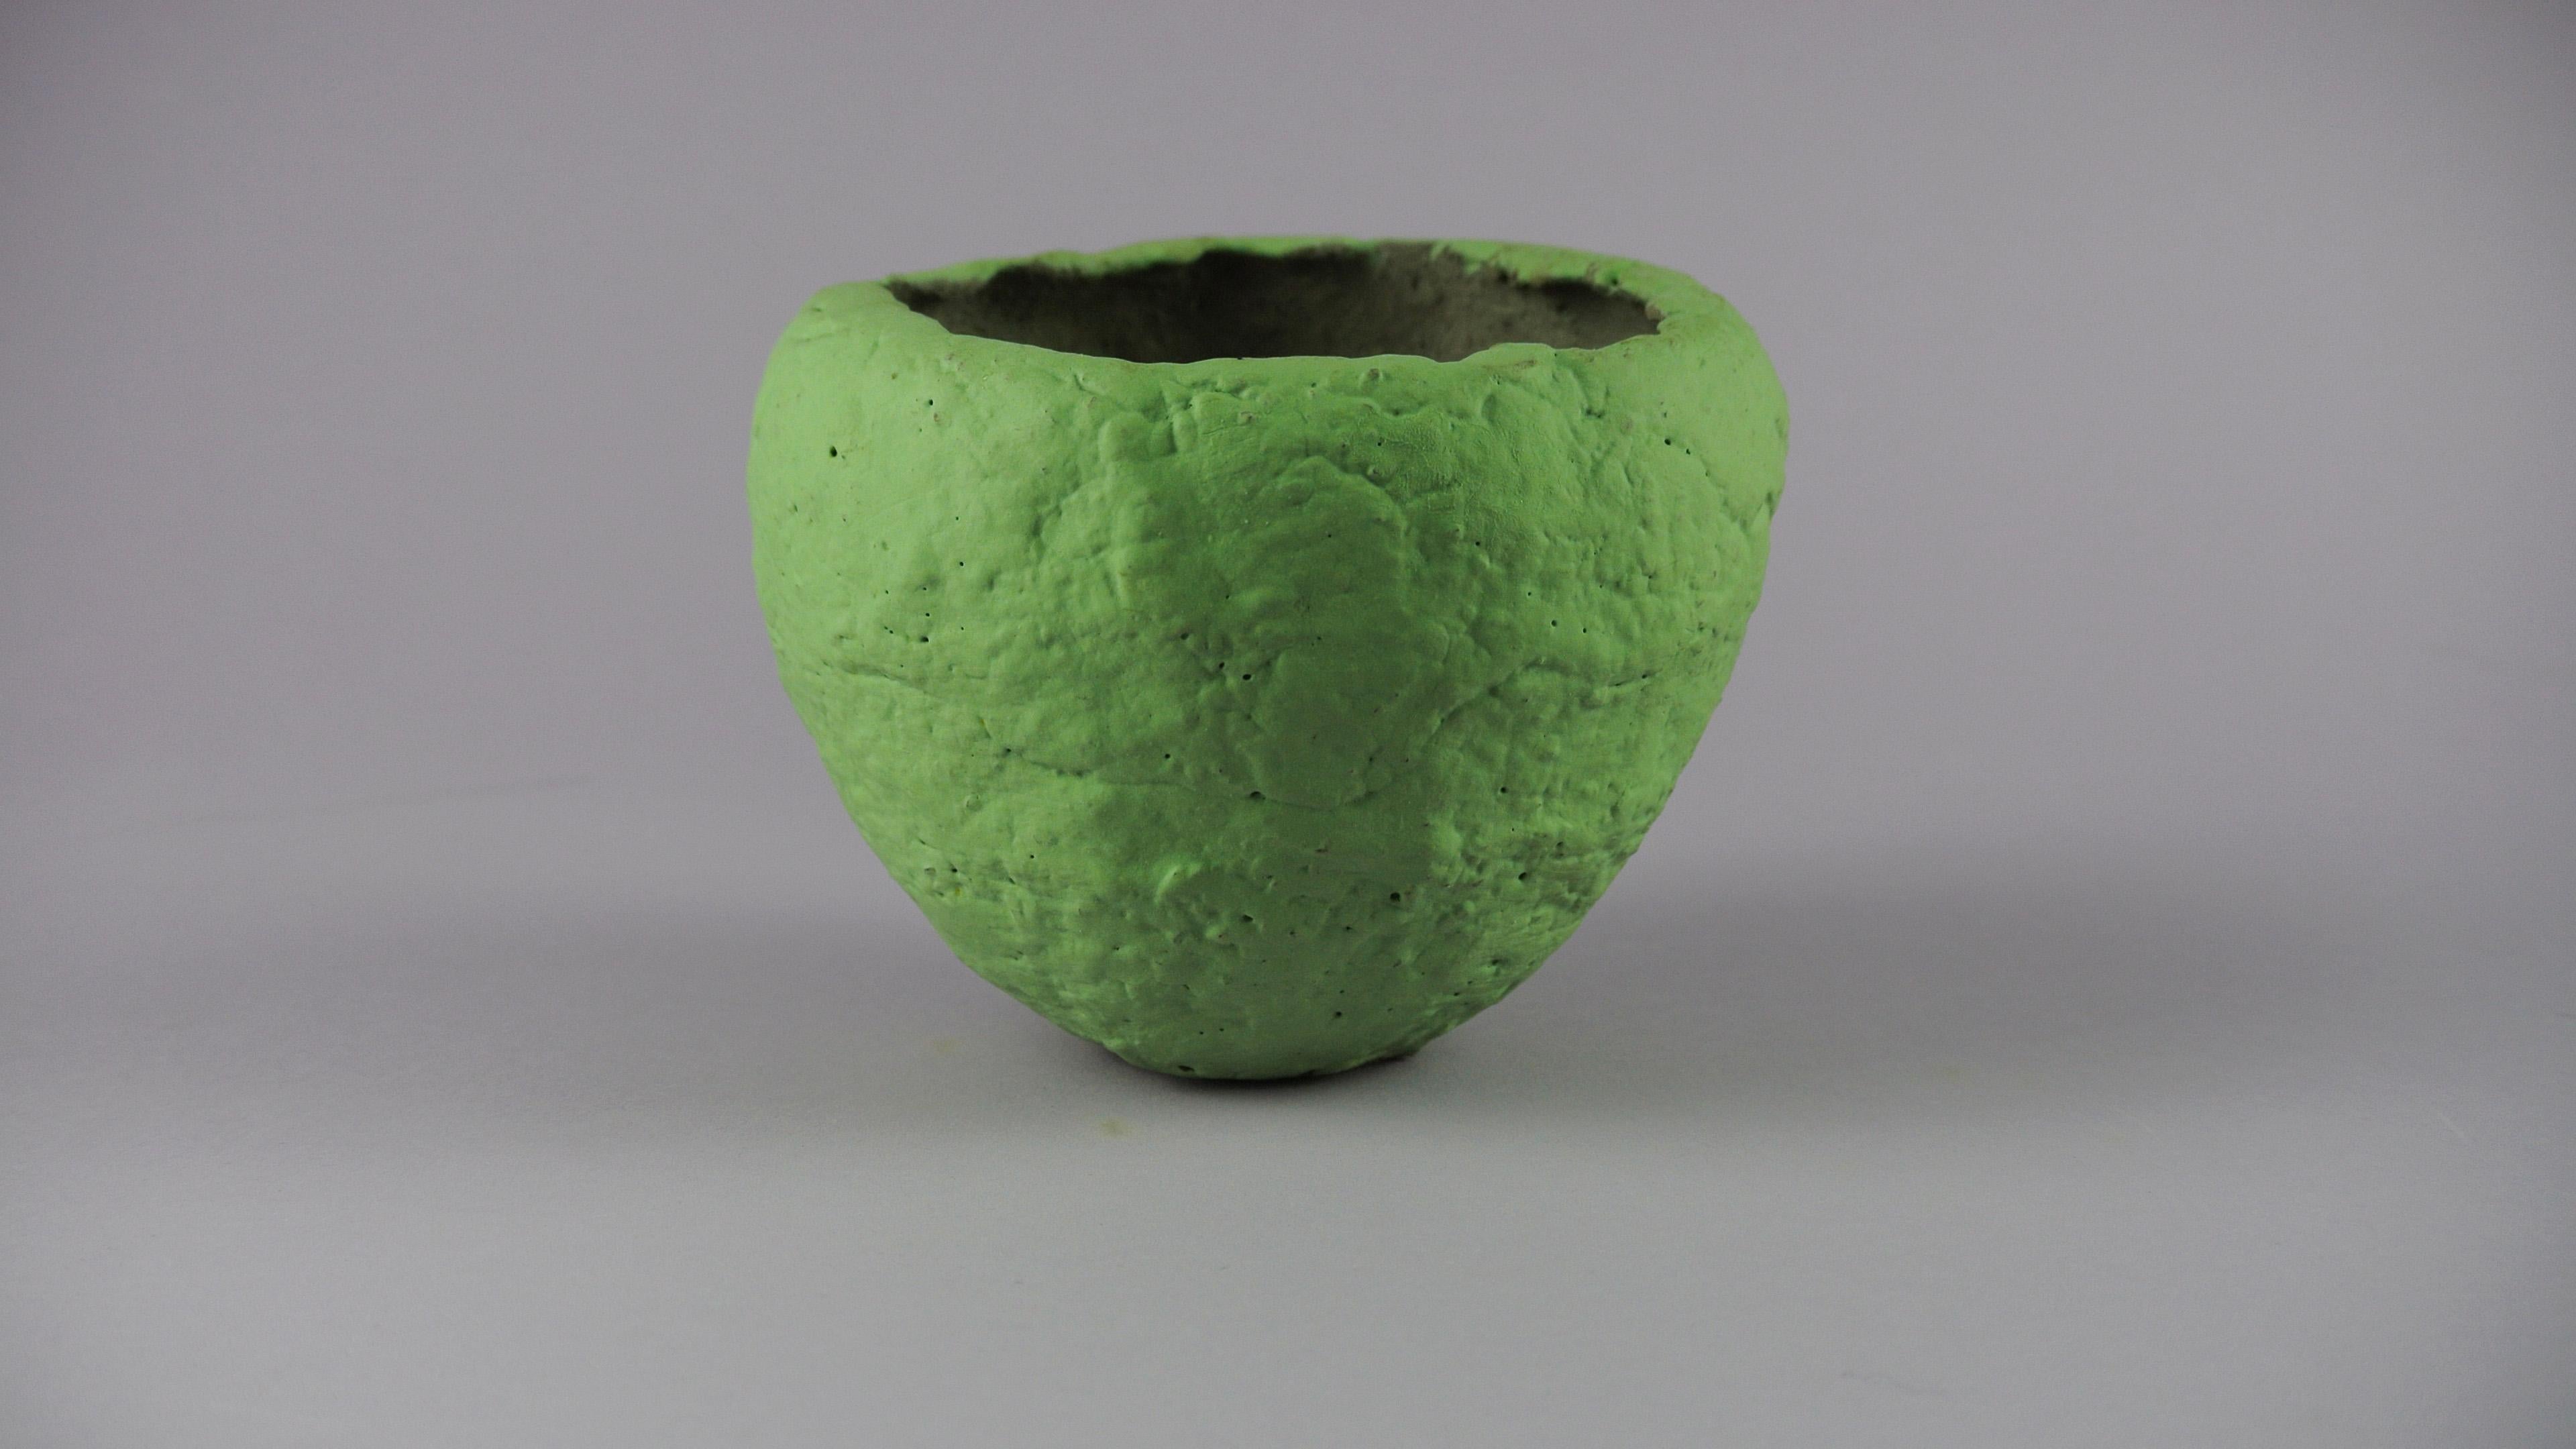 German Grey Stoneware Vessel with Lichen Green Engobe